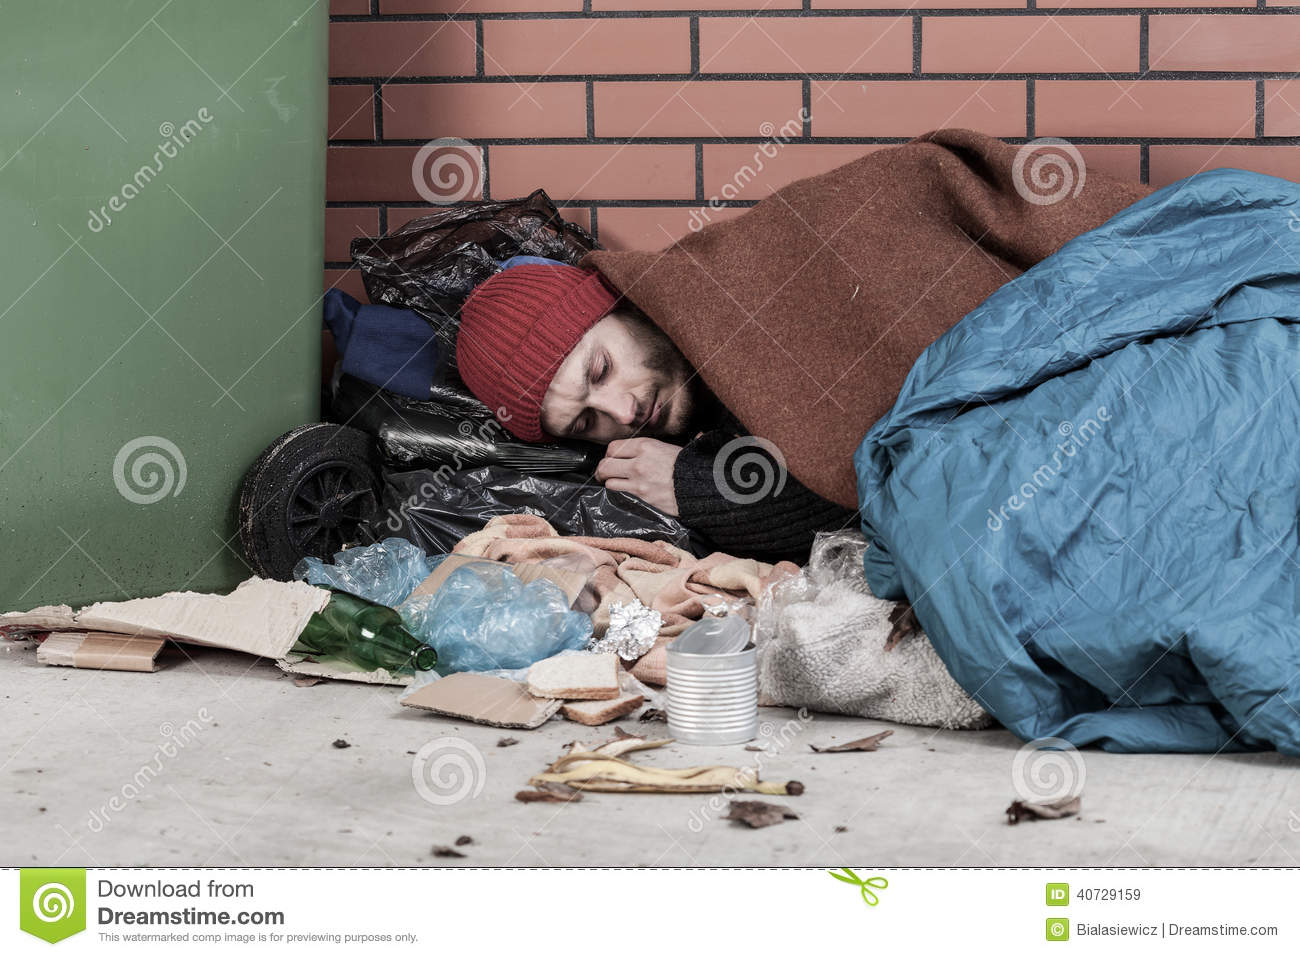 man-lying-street-poor-homeless-40729159.jpg